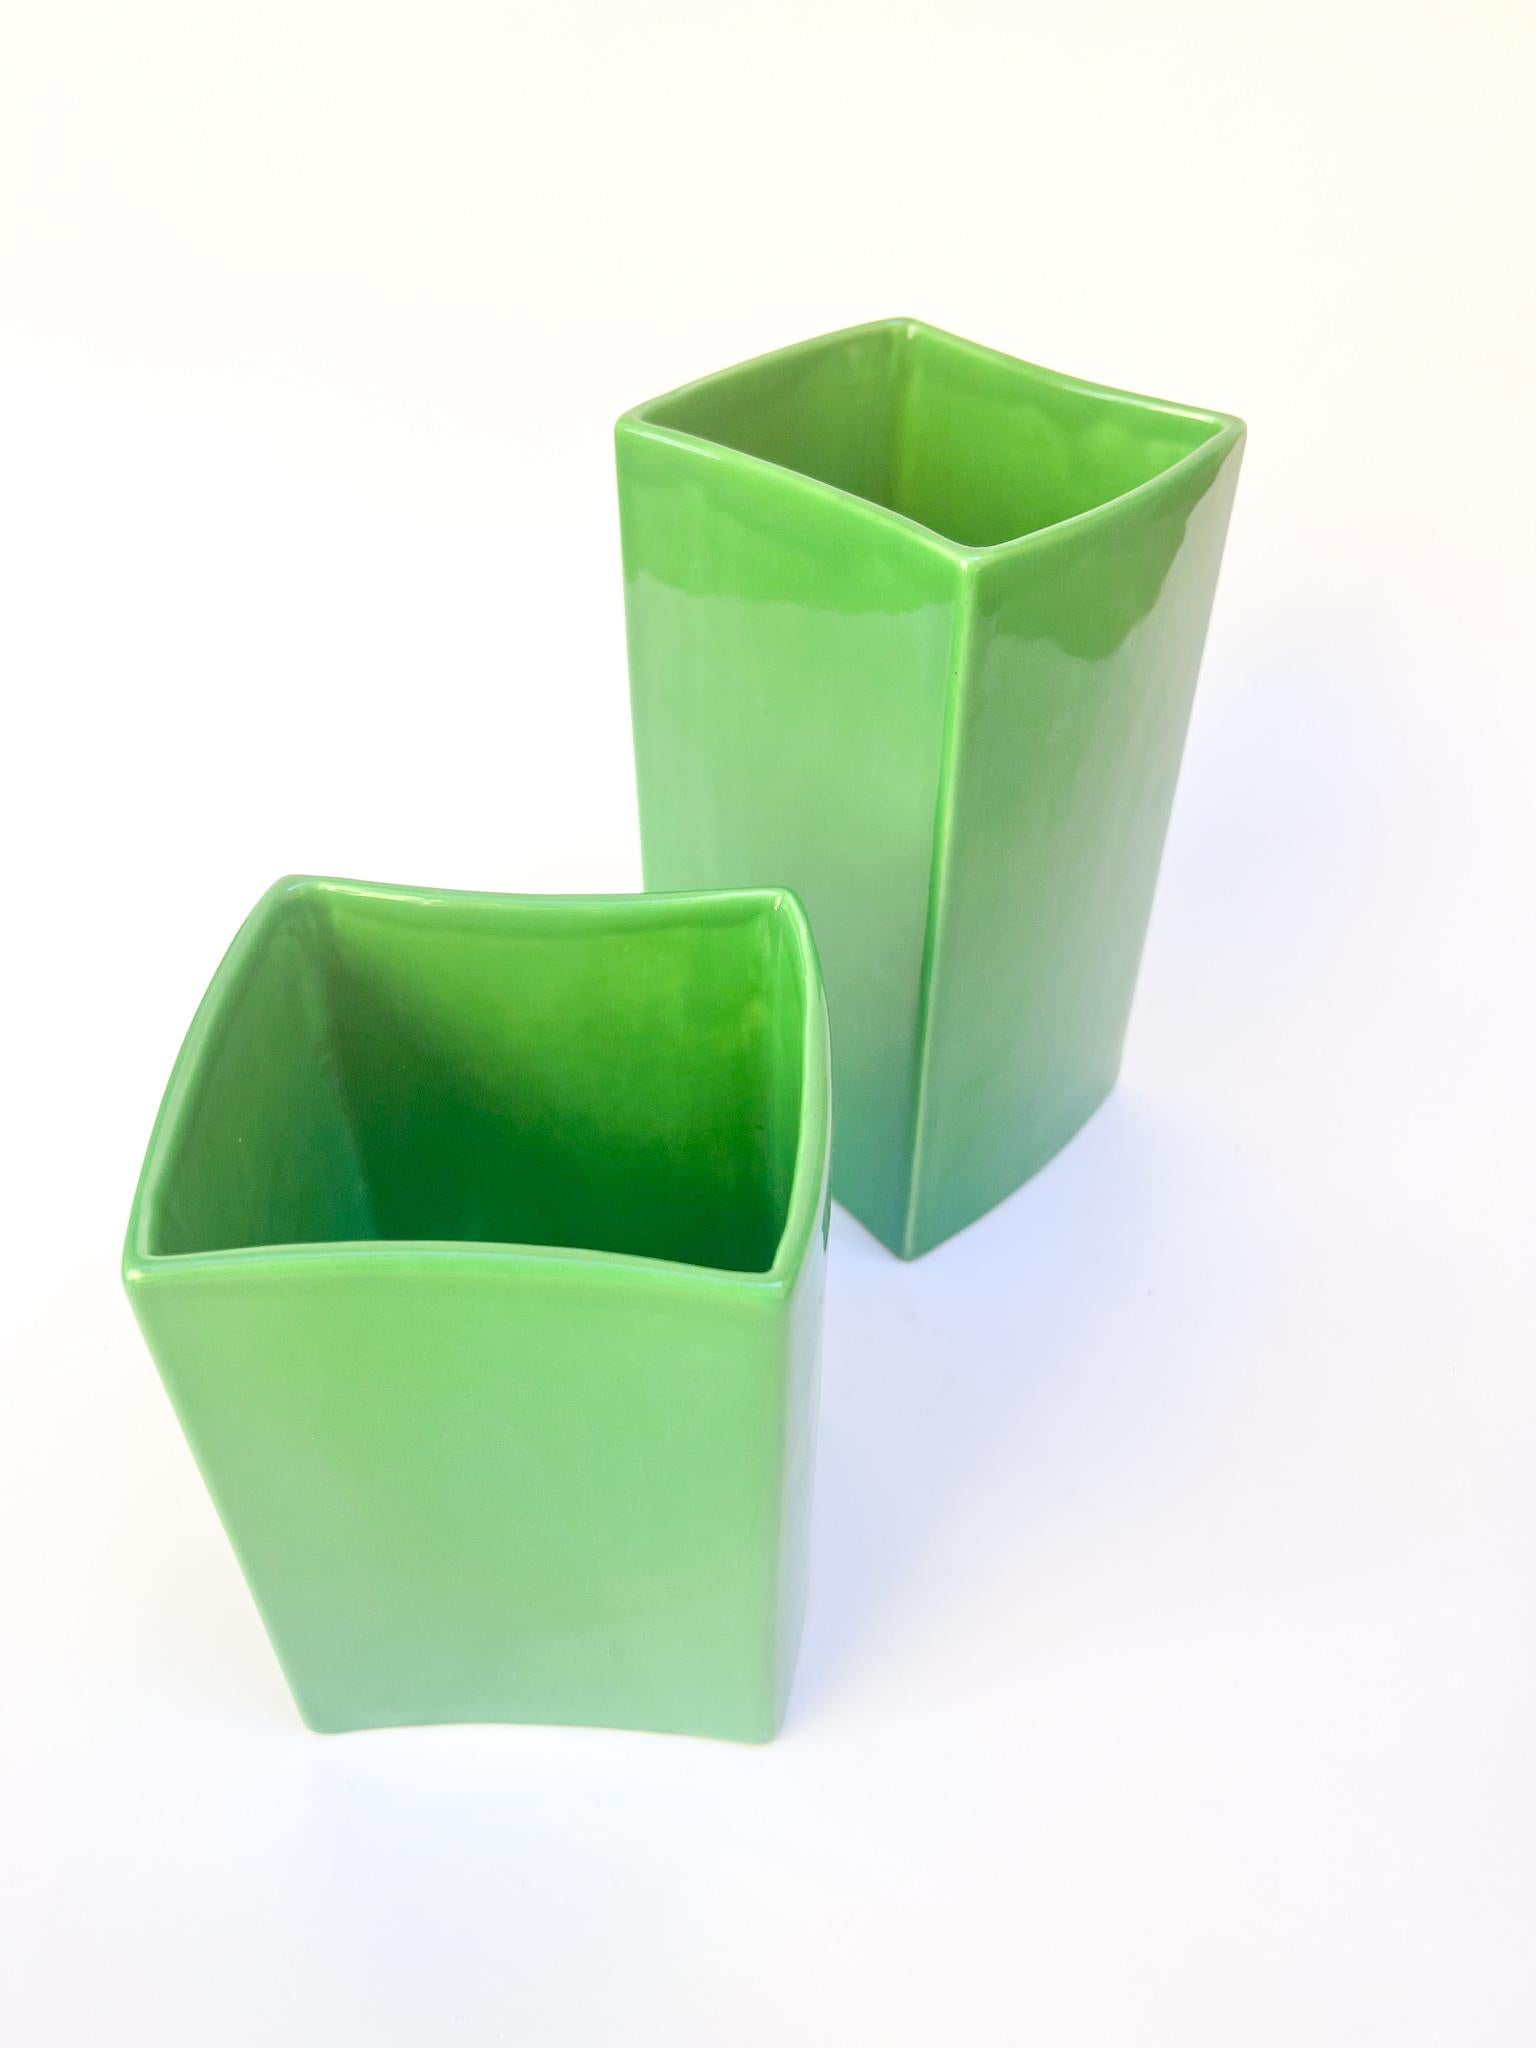 Paire de vases verts par Franco Bettonica pour Ceramica Gabbianelli, réalisés dans les années 1970.

Bigli : Ø cm 11.5 Ø cm 10 H cm 20
Le petit : Ø cm 11,5 Ø cm 10 H cm 15

Les deux vases ont un petit éclat dans un angle supérieur. Des photos